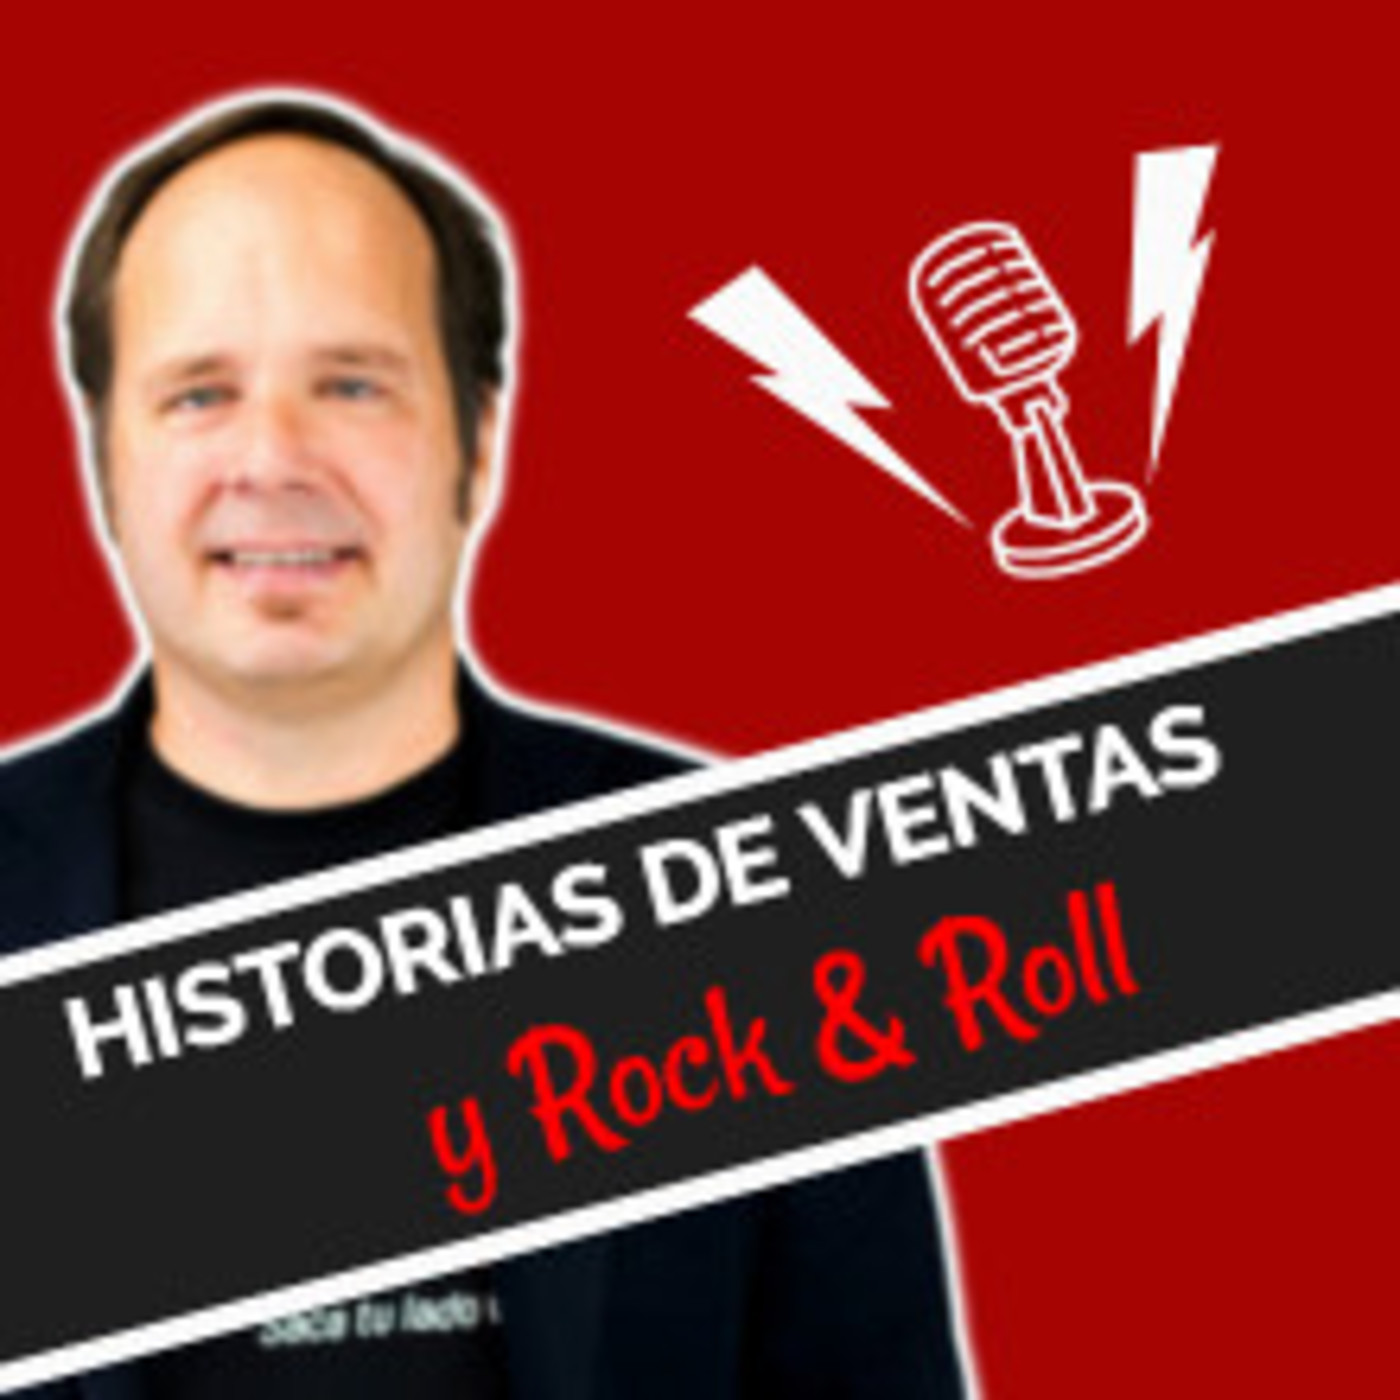 Historias de Venta y Rock & Roll